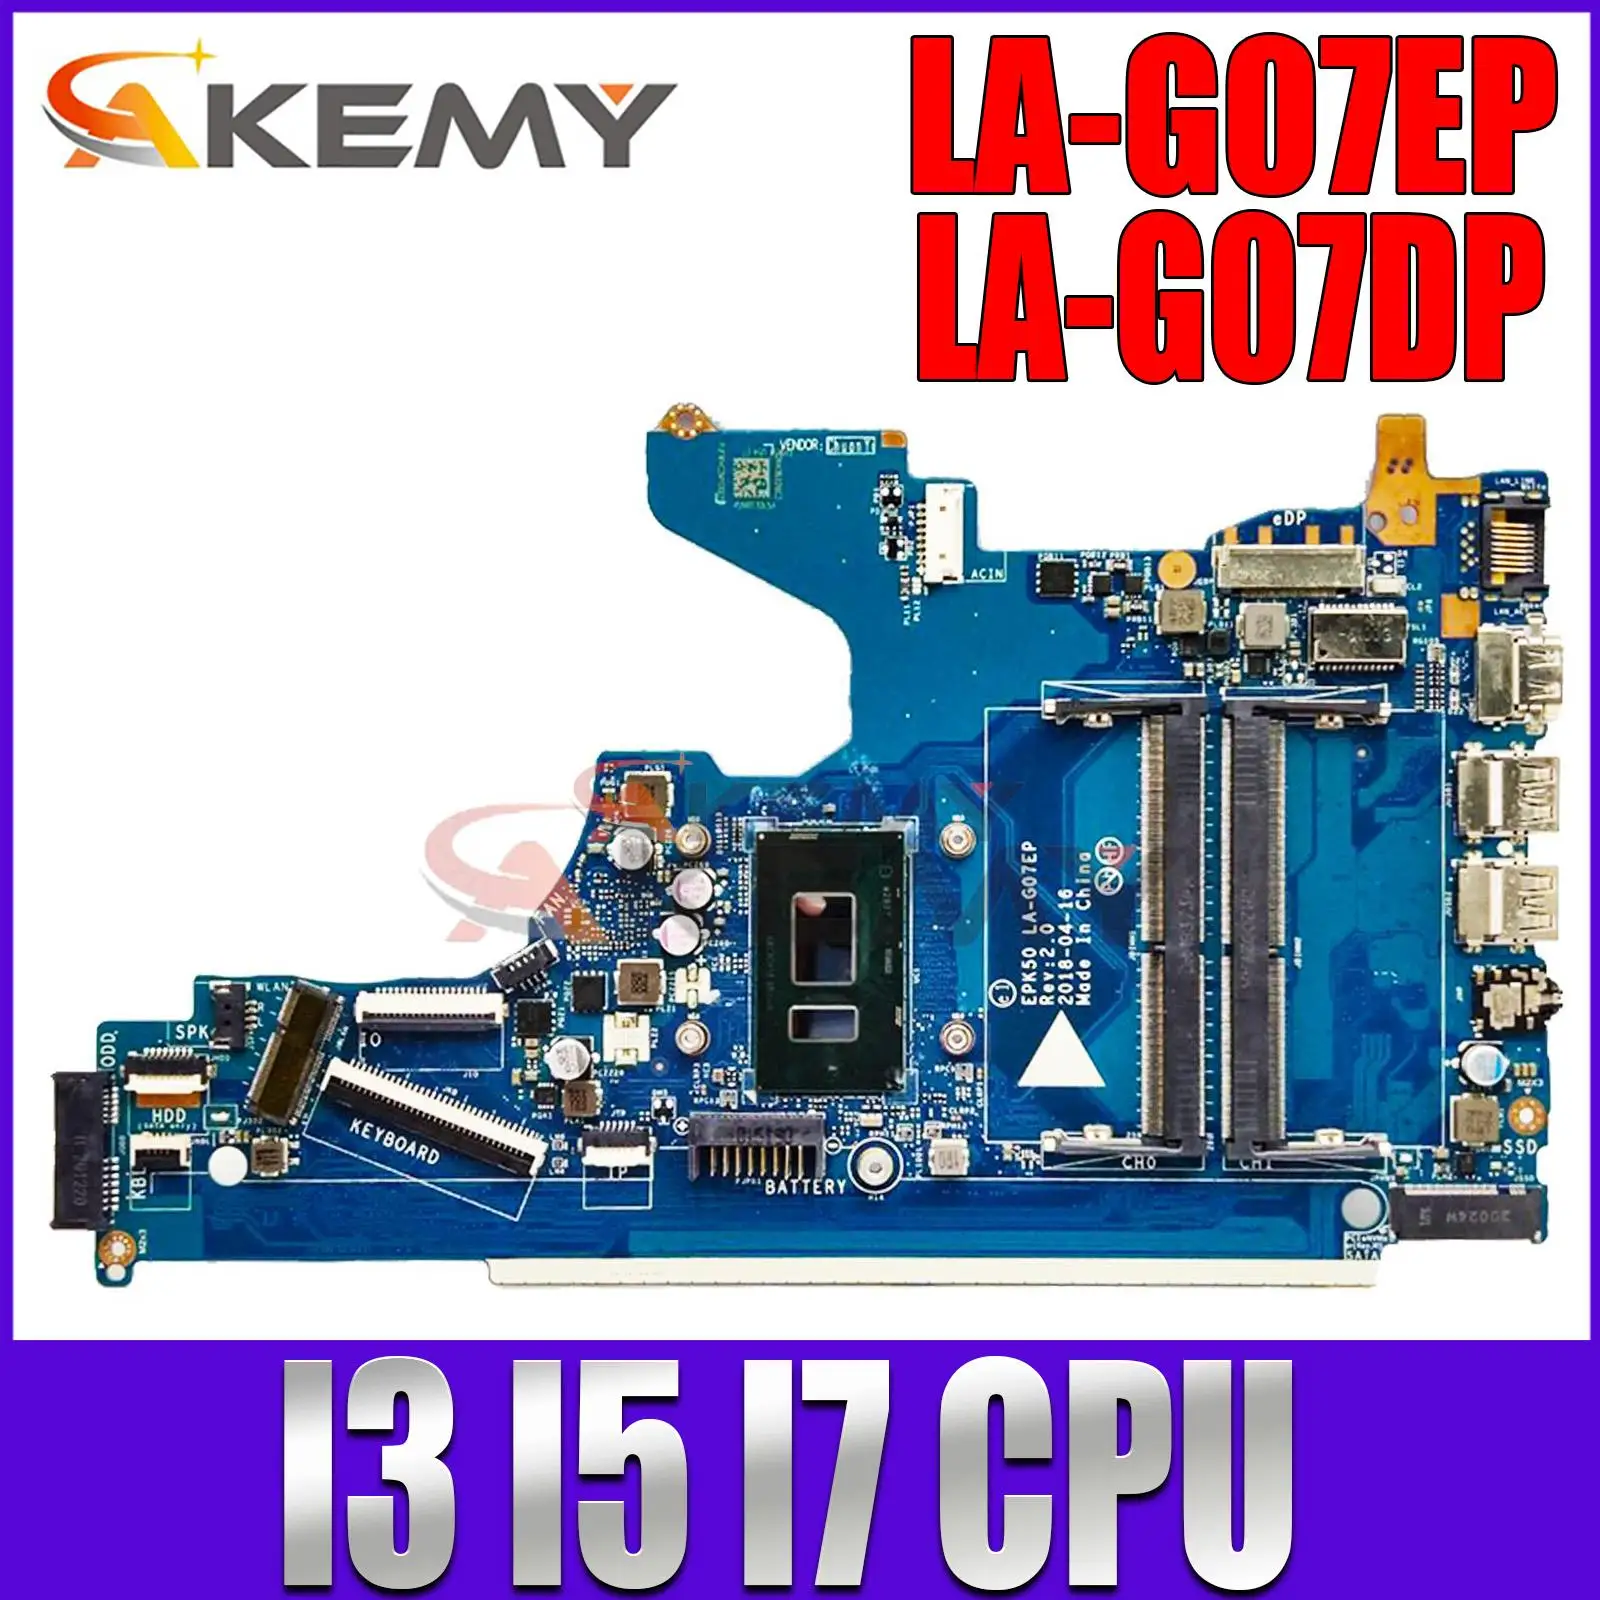 

For HP Pavilion 15-DA 250 G7 LA-G07DP Laptop Motherboard With i3 i5 i7 CPU EPK50 LA-G07EP L20373-601 L20373-601